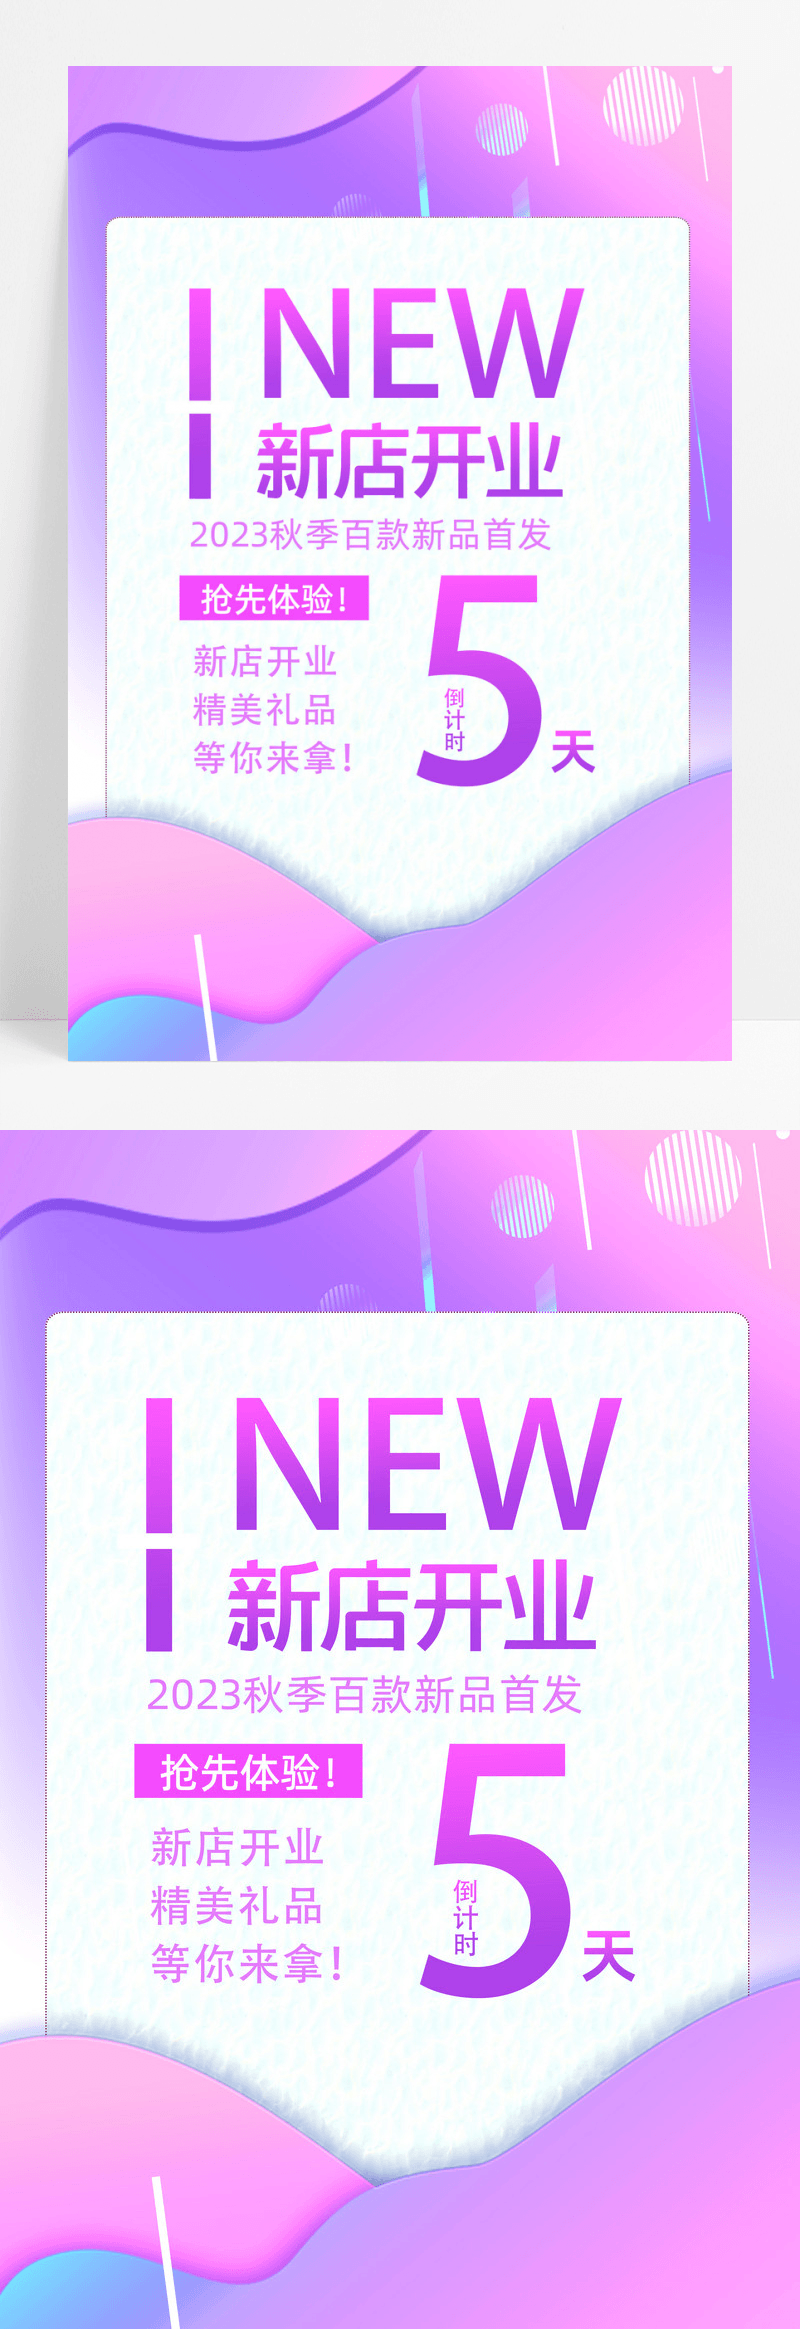 紫色炫彩新店开业紫色炫彩新店开业海报